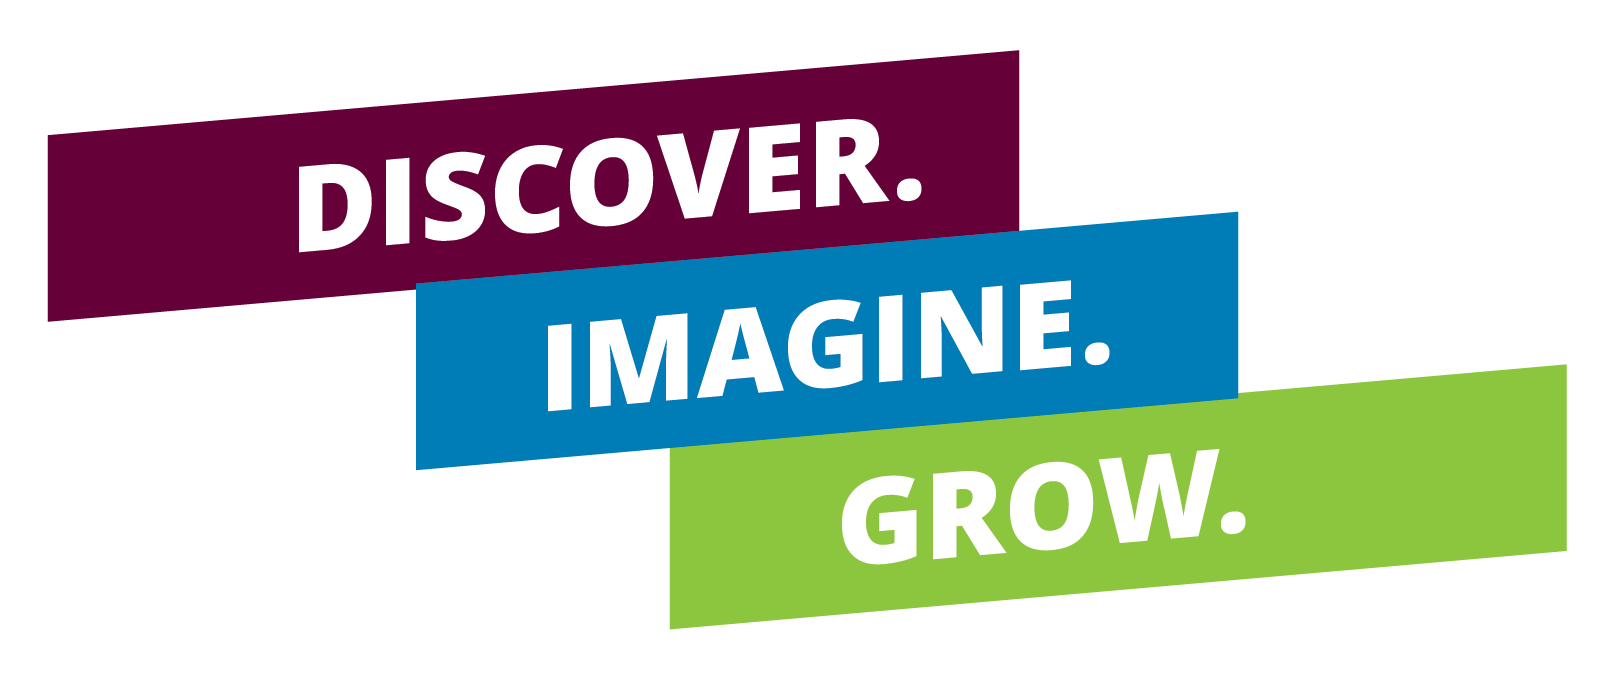 discover imagine grow